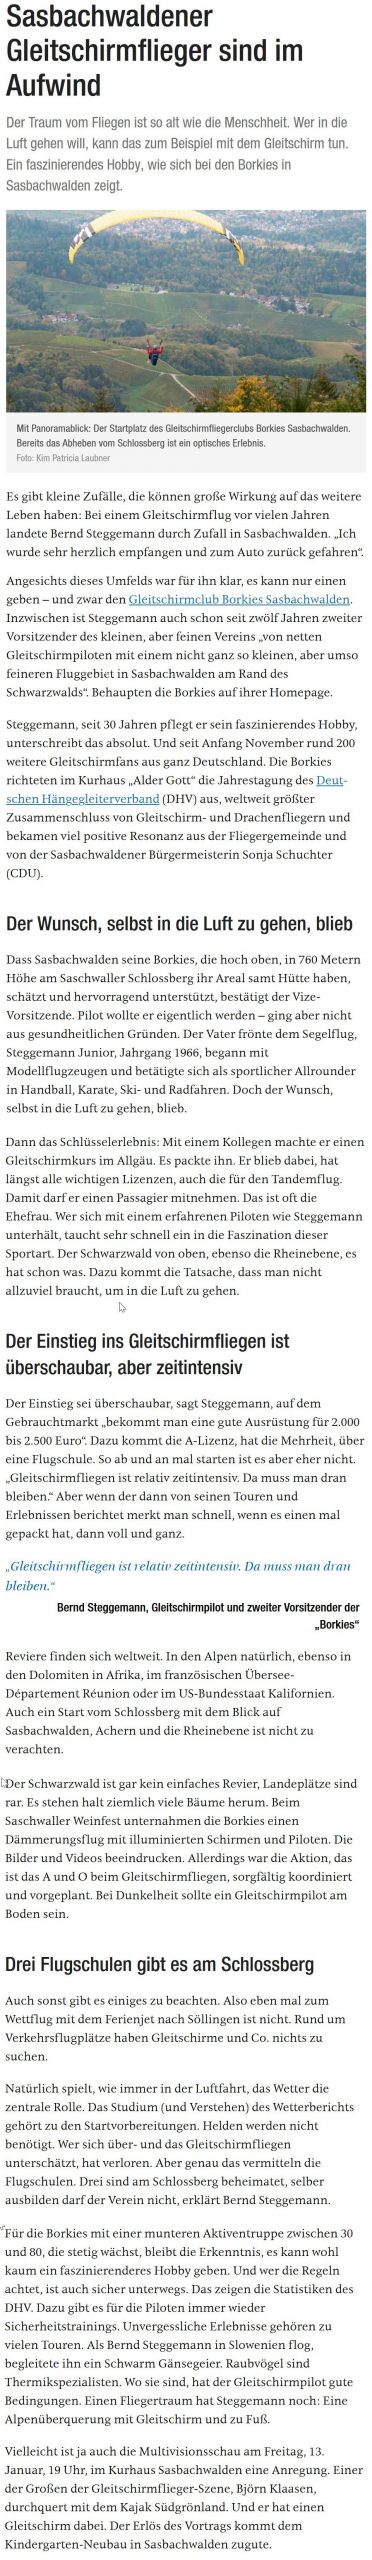 Zeitungsartikel in BNN vom 1.1.2023 "Sasbachwaldener Gleitschirmflieger sind im Aufwind"